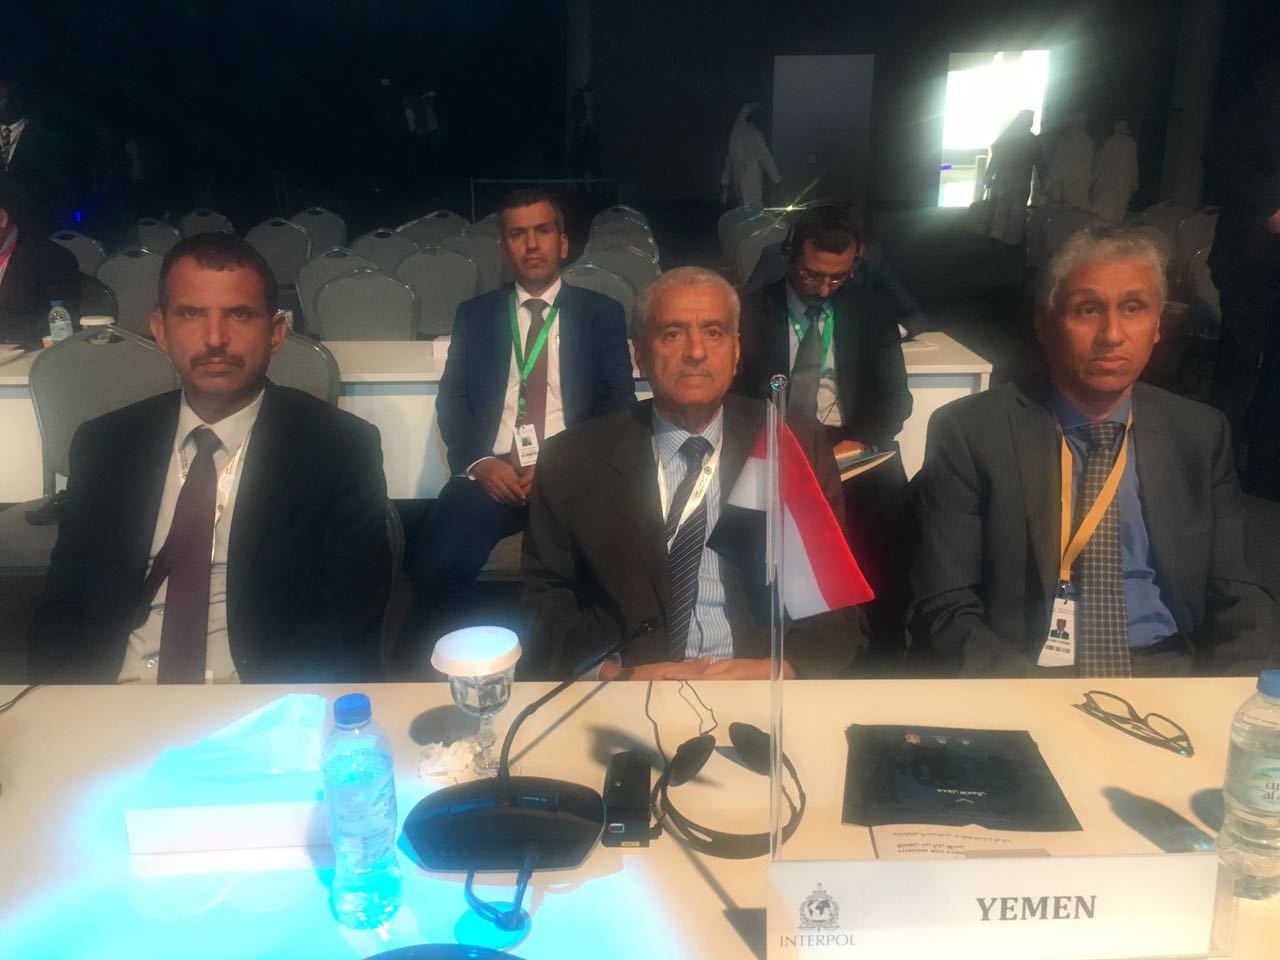 وزير الداخلية يشيد بدور الإمارات في دعم الشرعية وتعزيز الأمن في مختلف المحافظات اليمنية